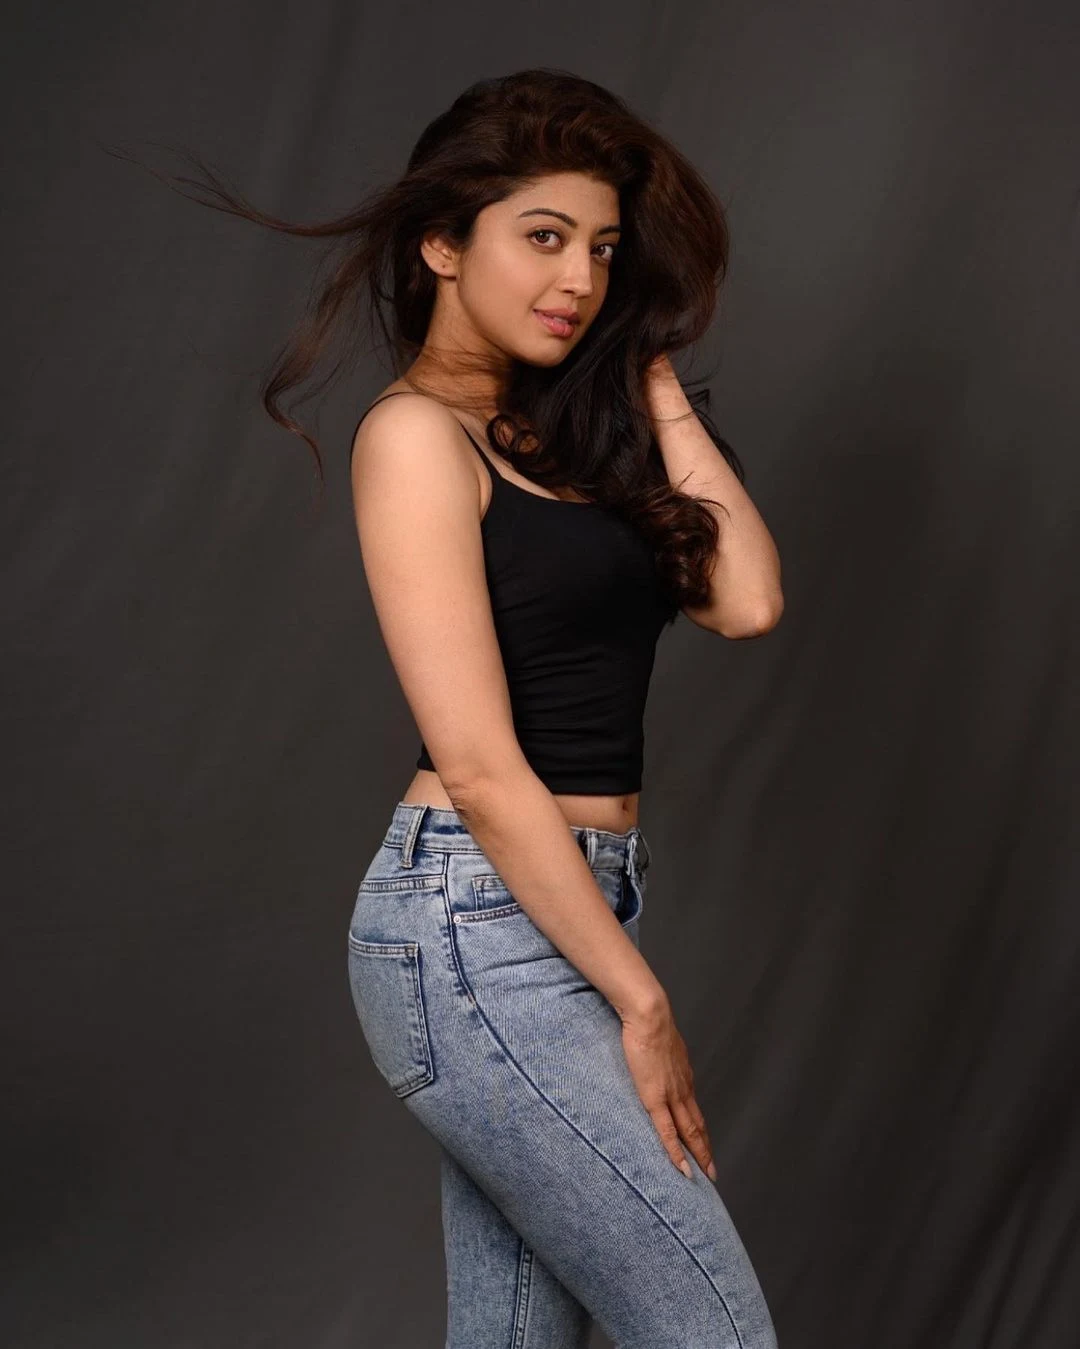 18 Hot & Sizzling Photo’s of Pranitha | Pranitha Subhash Hot, Sexy & Latest Photos